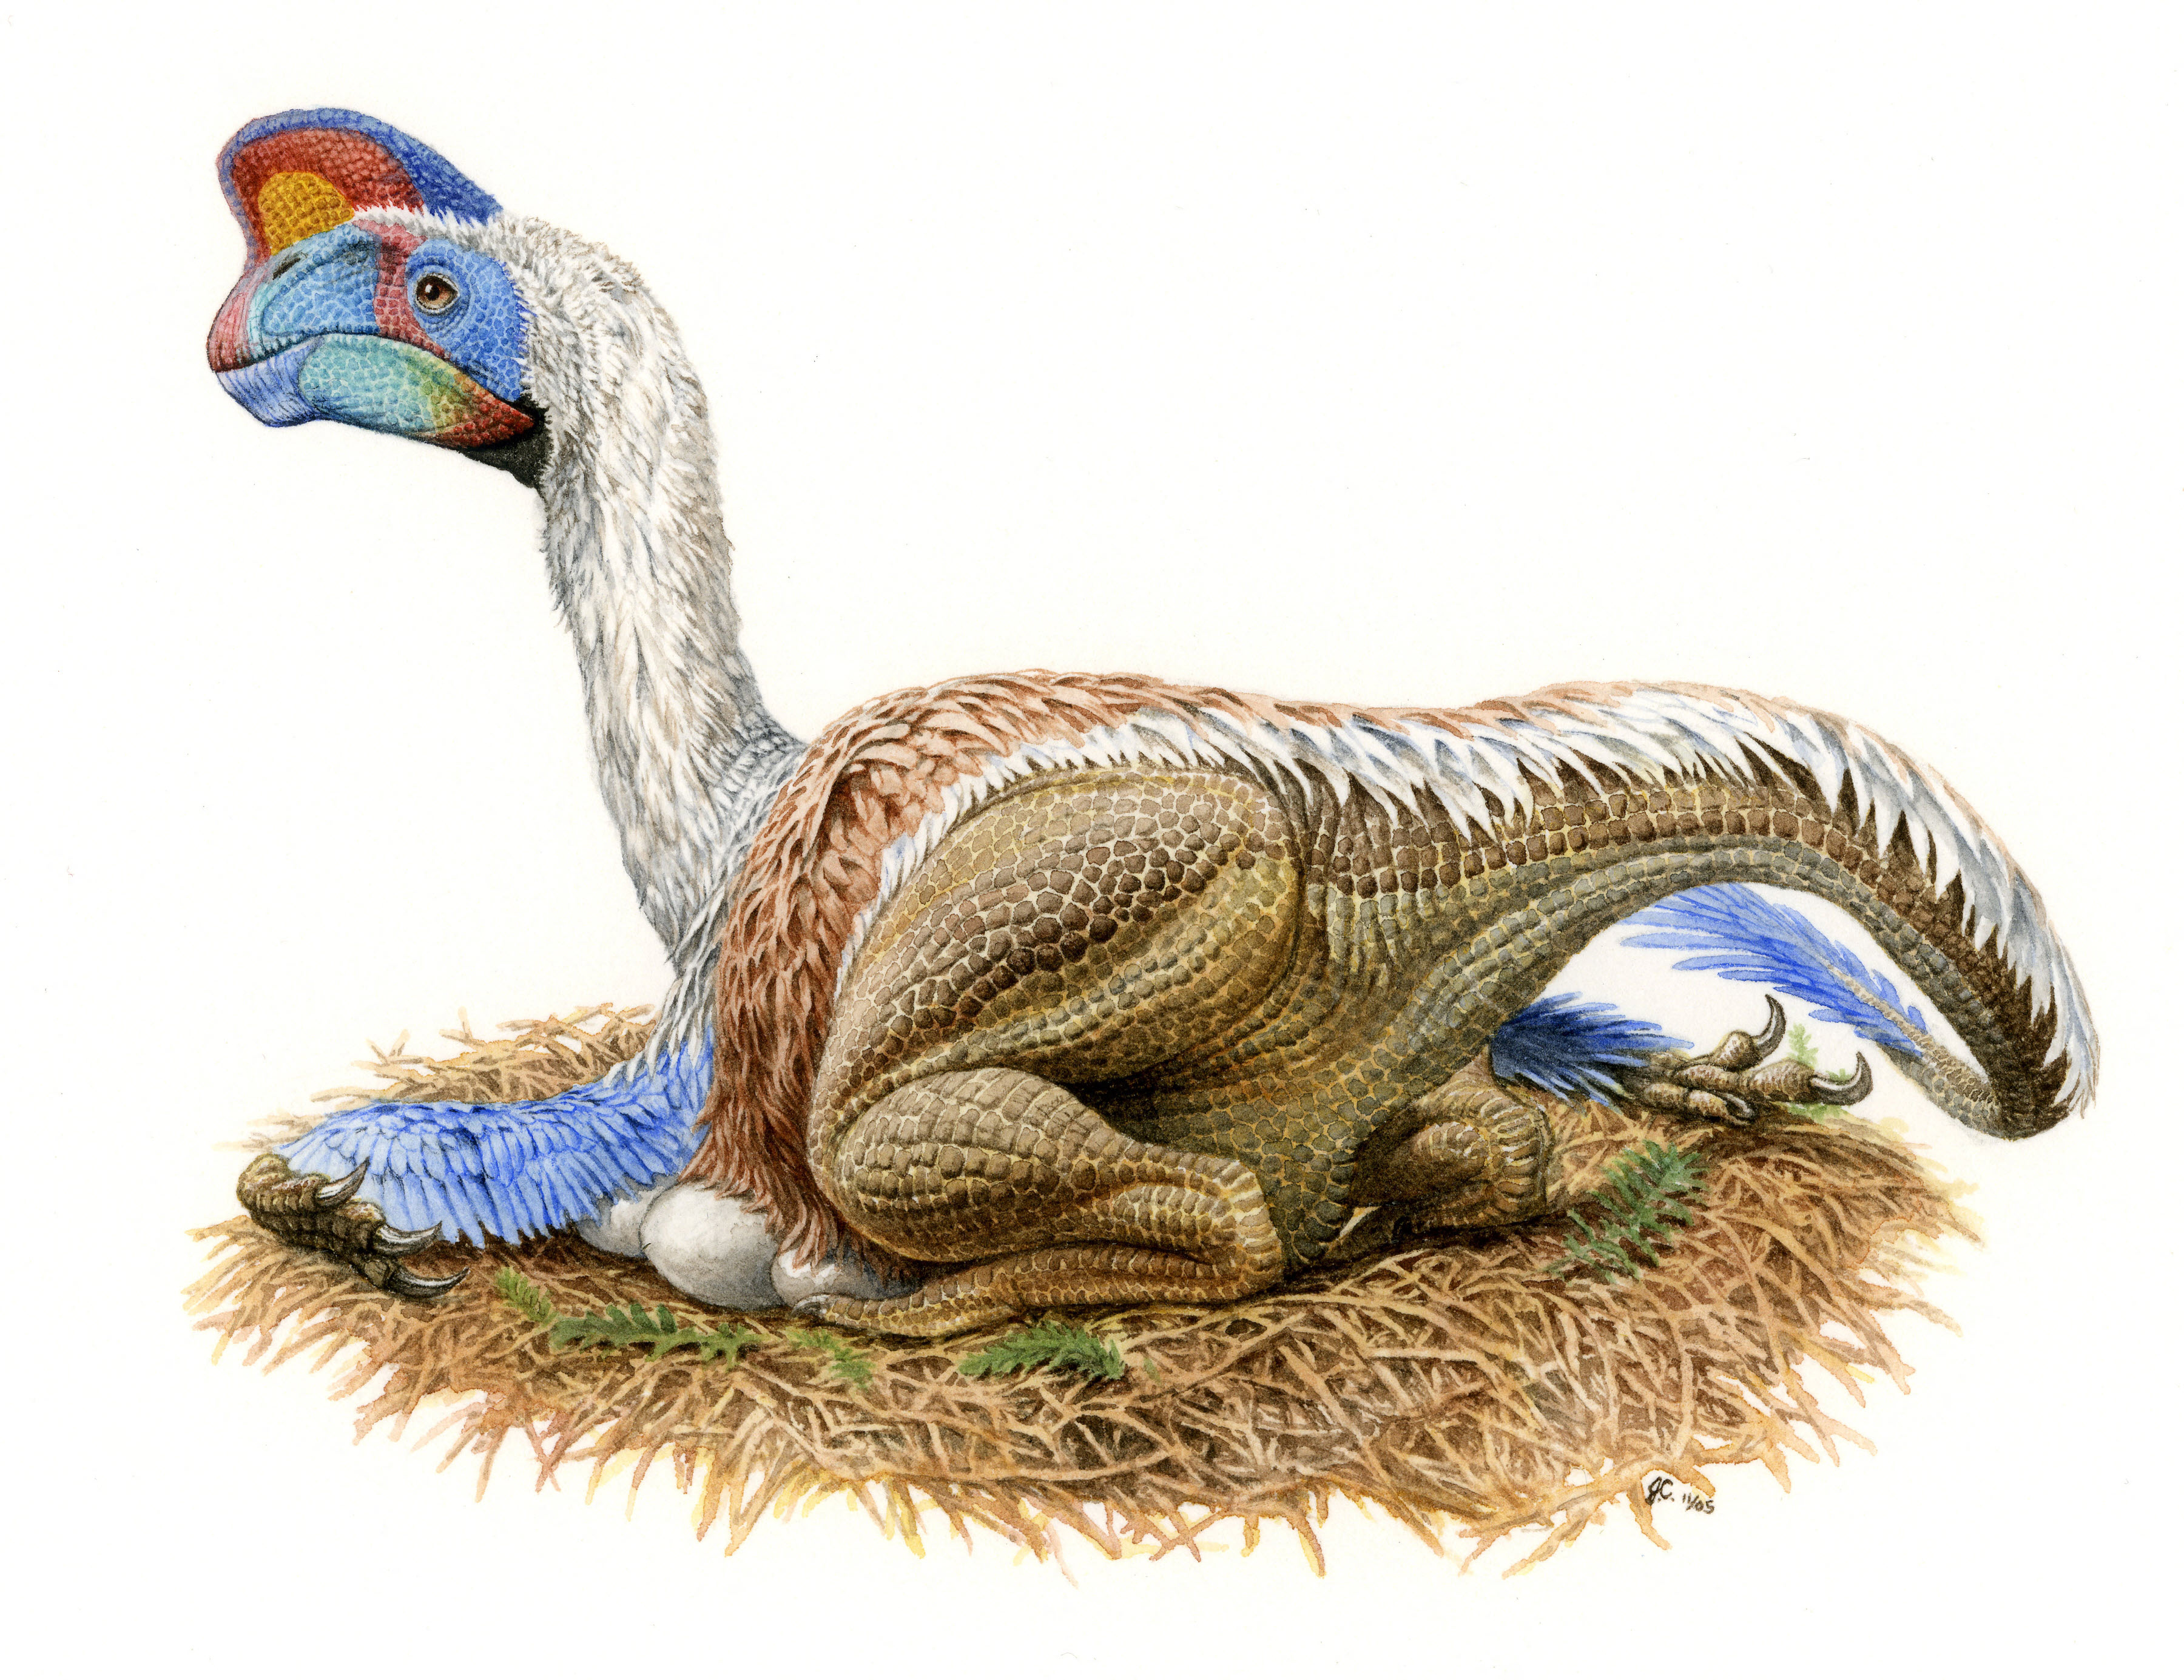 Az oviraptor-embrió az év dinoszaurusza a Qubit 2021-es őslénytani összefoglalójában